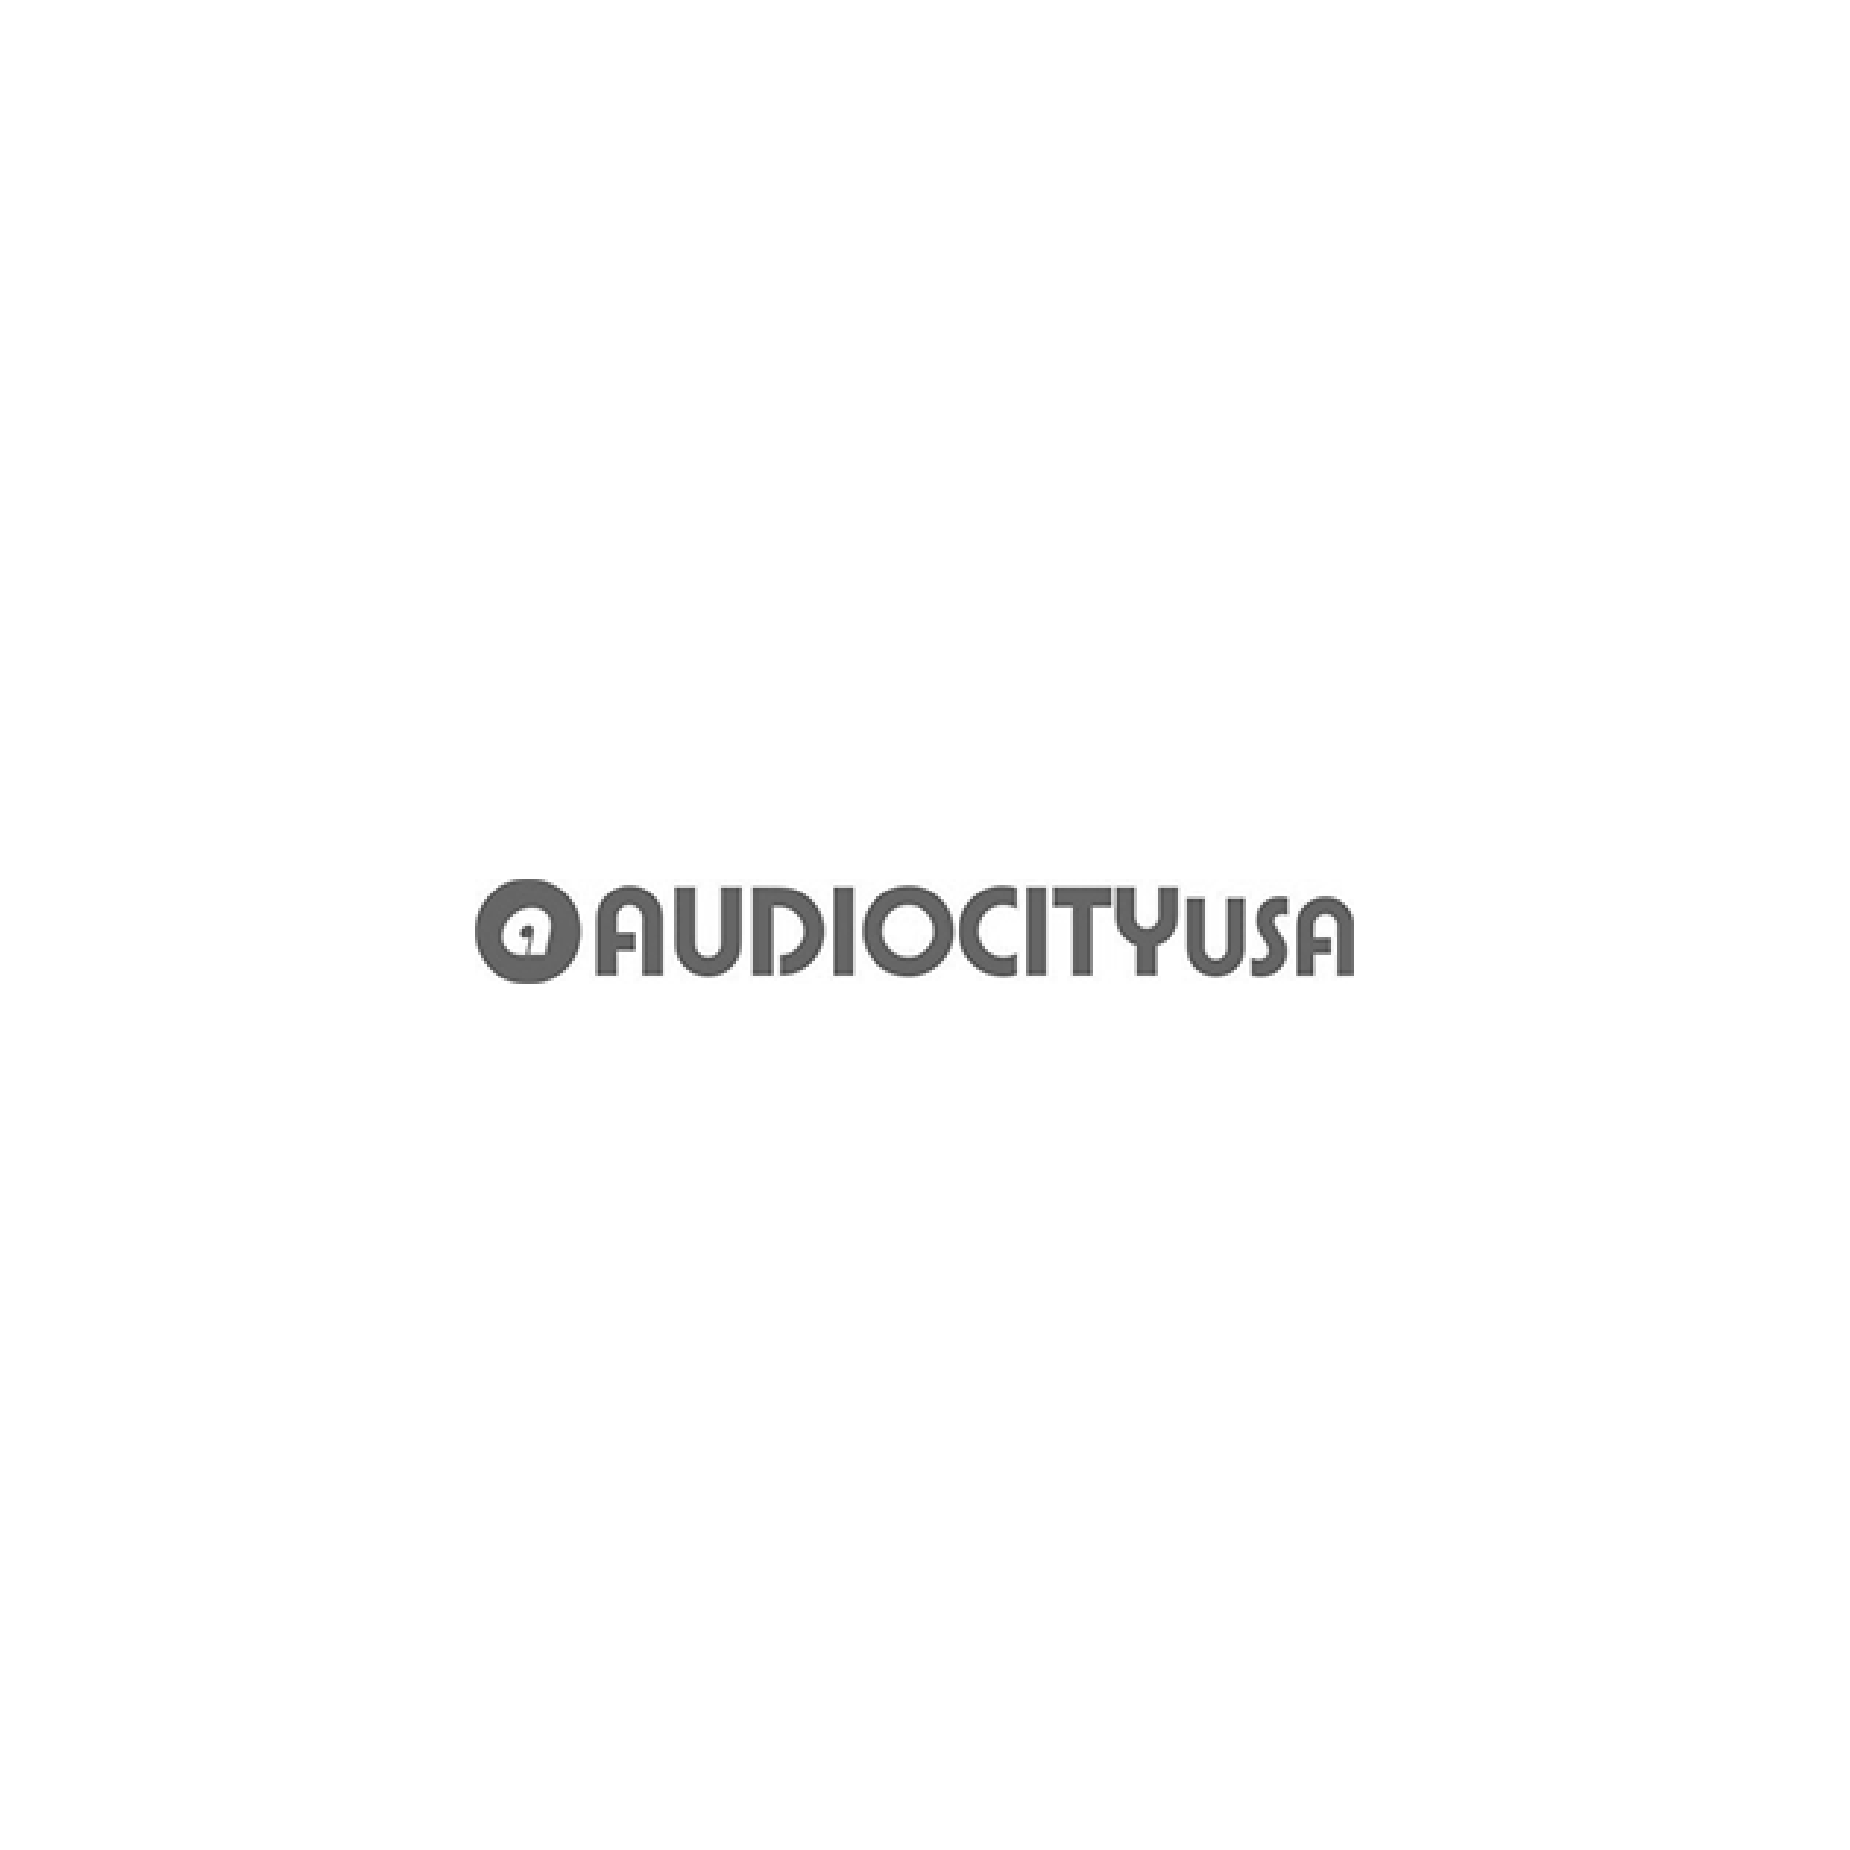 audiocity-01.png